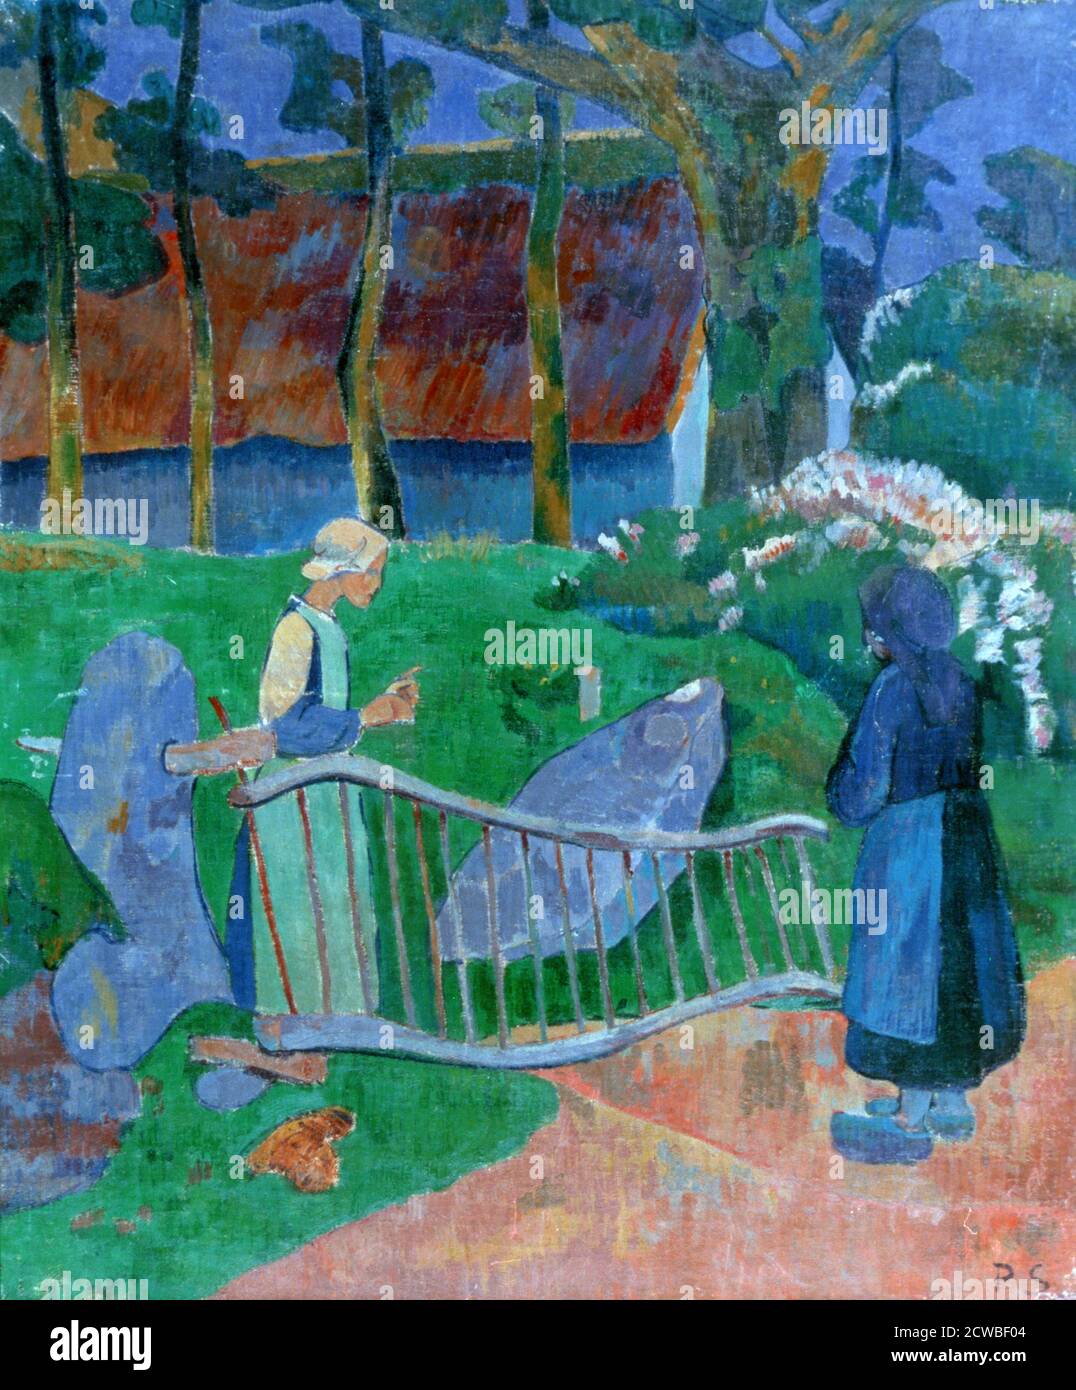 The Flowered Gate', 1889. Künstler: Paul Serusier. Paul Serusier(1864-1927) war ein französischer Maler, der ein Pionier der abstrakten Kunst und eine Inspiration für die Avantgarde-Nabis-Bewegung war. Stockfoto